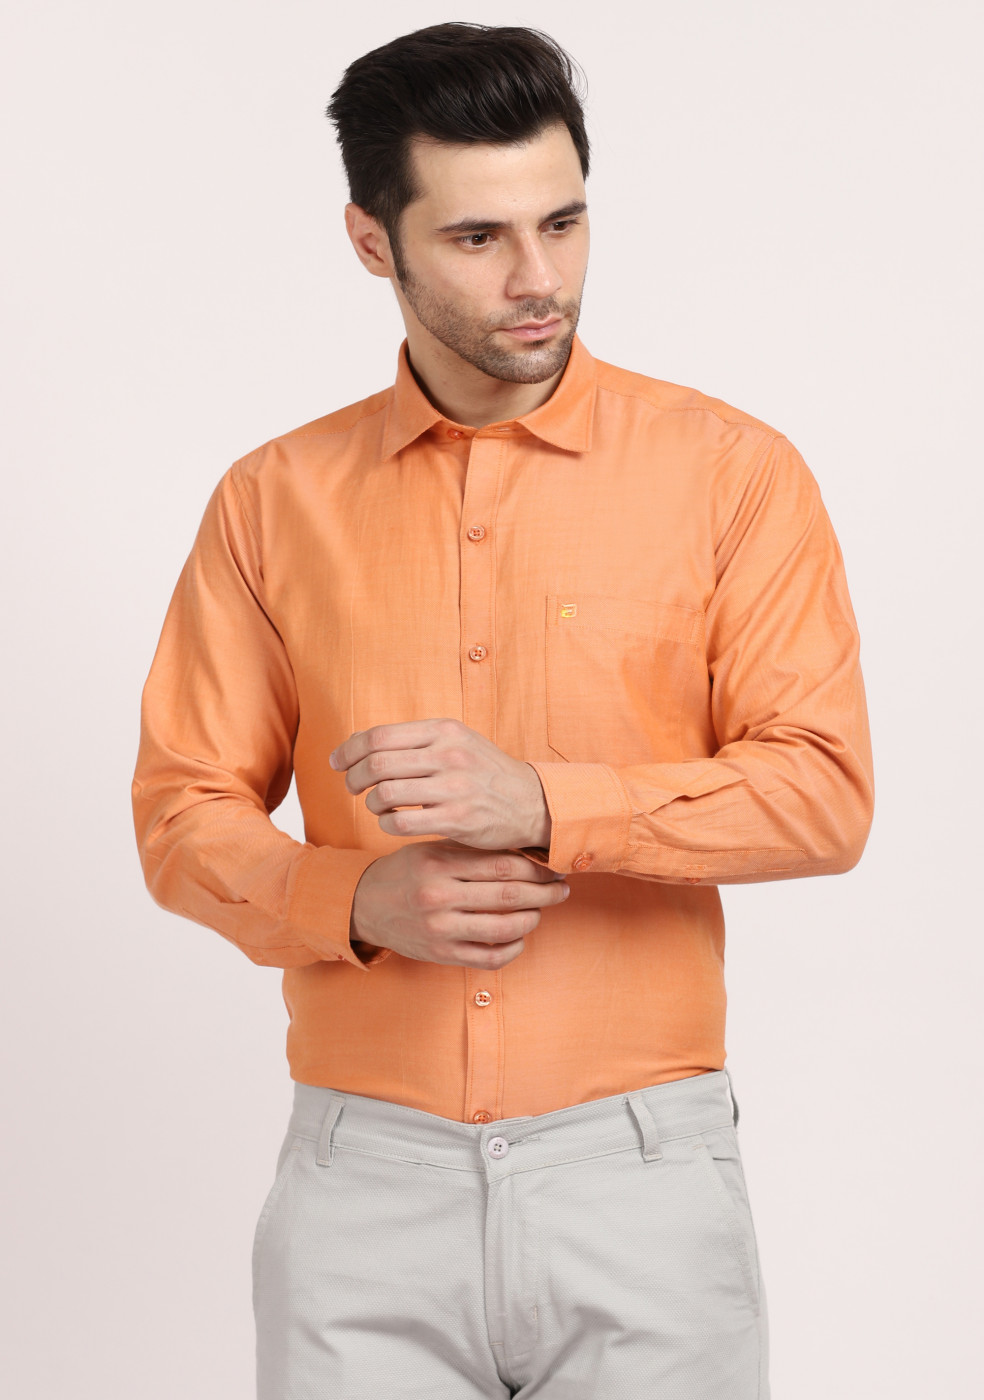 ASHTOM Orange Plain Cotton Shirt For Men Regular Fit